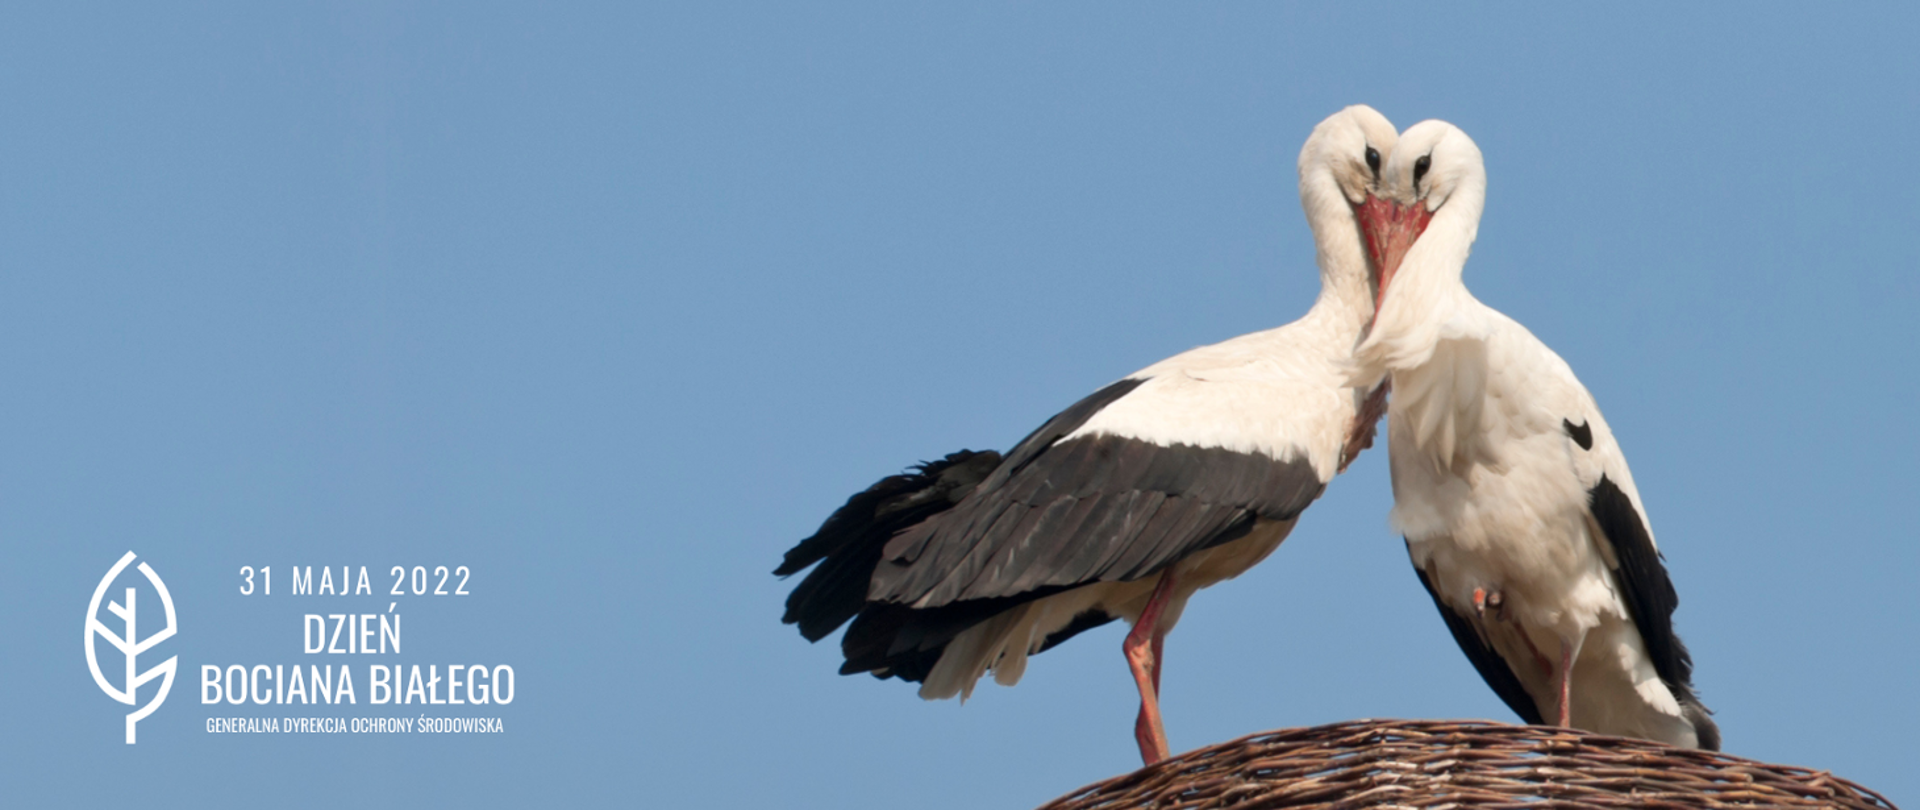 Dwa ptaki - bociany białe (o białych i czarnych piórach, czerwonych nogach i dziobach) stoją na gnieździe w kolorze brązowym. W tle błękitne niebo. W lewym dolnym rogu biały napis: 31 maja 2022 Dzień Bociana Białego (biały liść) i logo Generalnej Dyrekcji Ochrony Środowiska